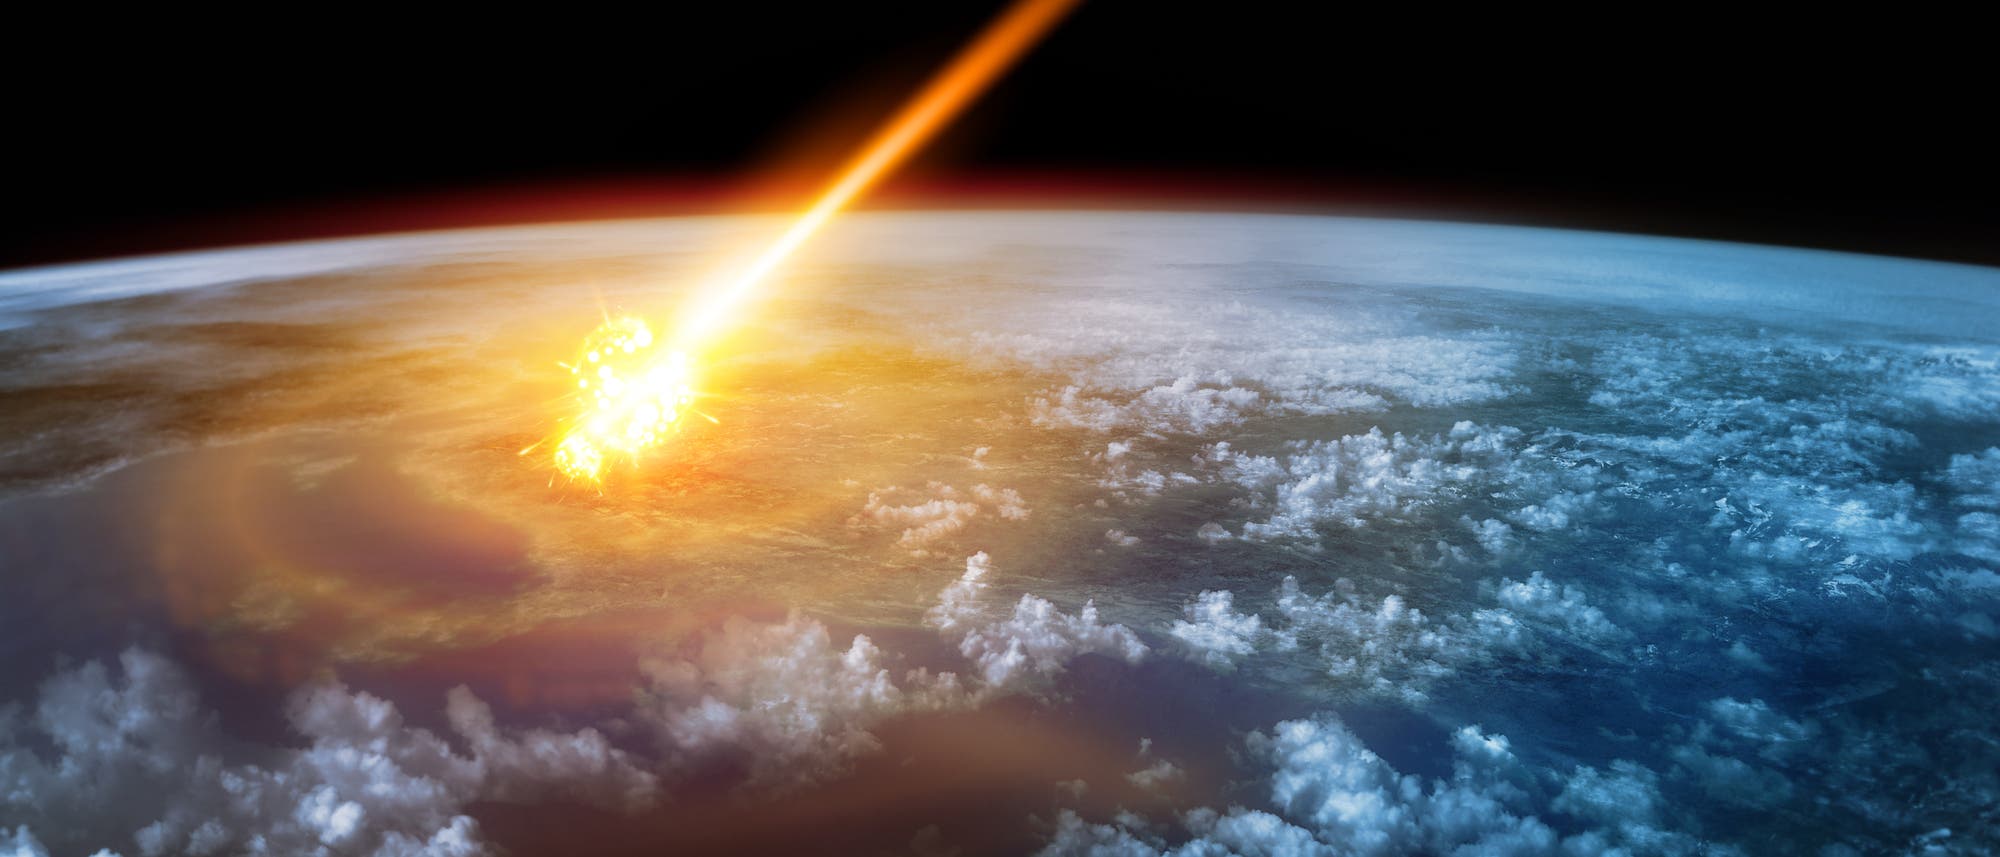 Künstlerische Darstellung eines Meteors, der in der Atmosphäre explodiert